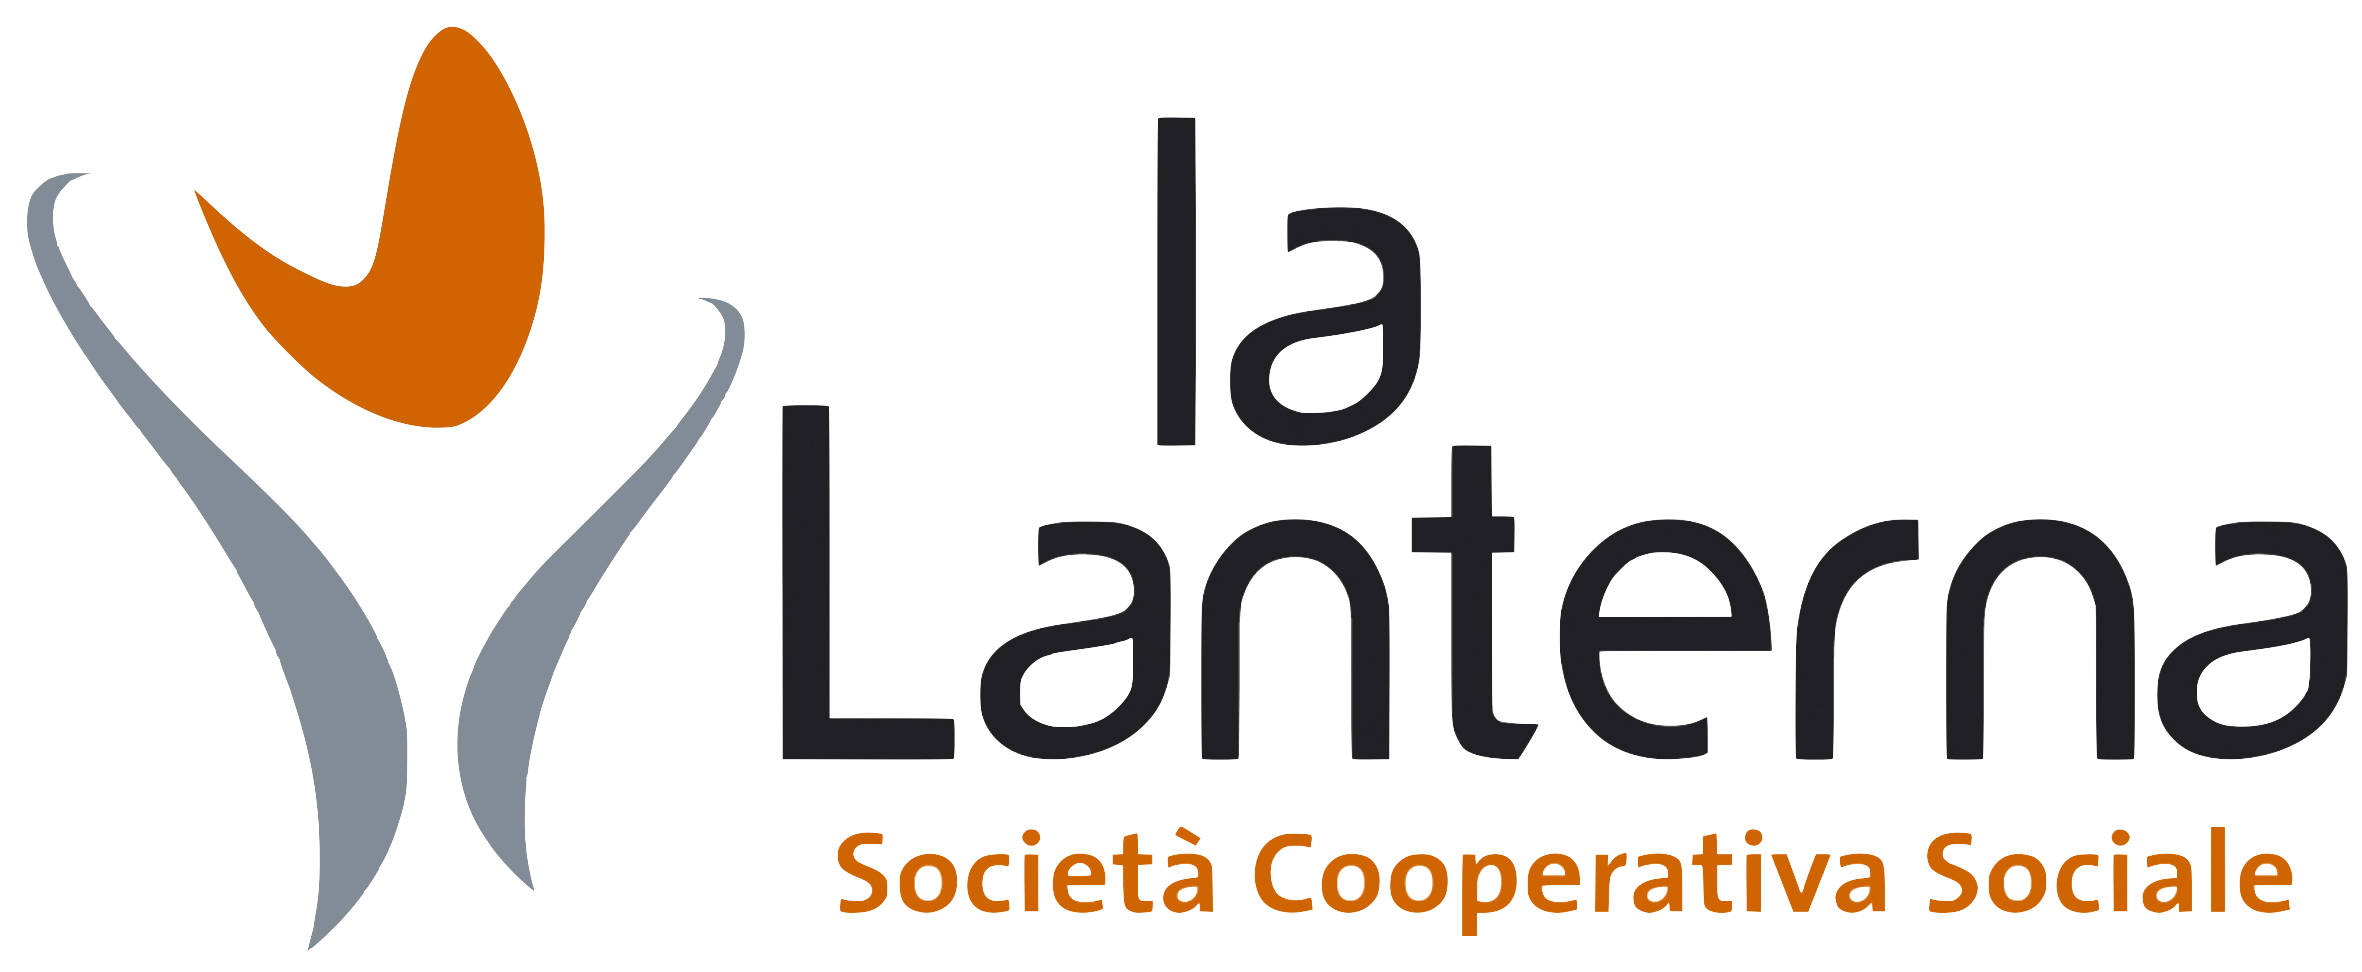 Cooperativa Sociale La Lanterna - Logo Aziendale